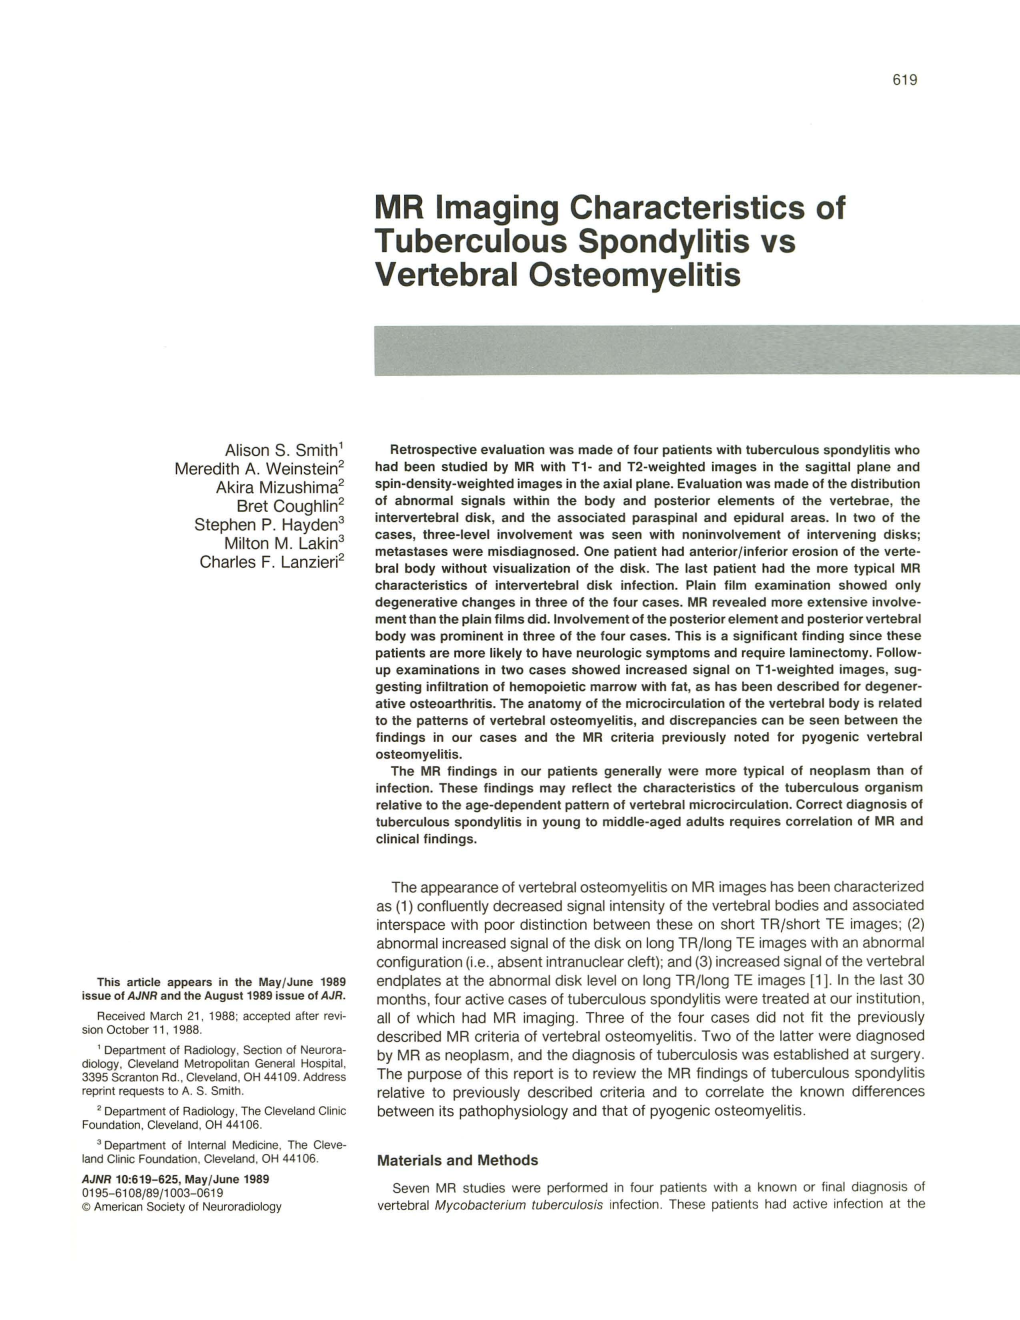 MR Imaging Characteristics of Tuberculous Spondylitis Vs Vertebral Osteomyelitis